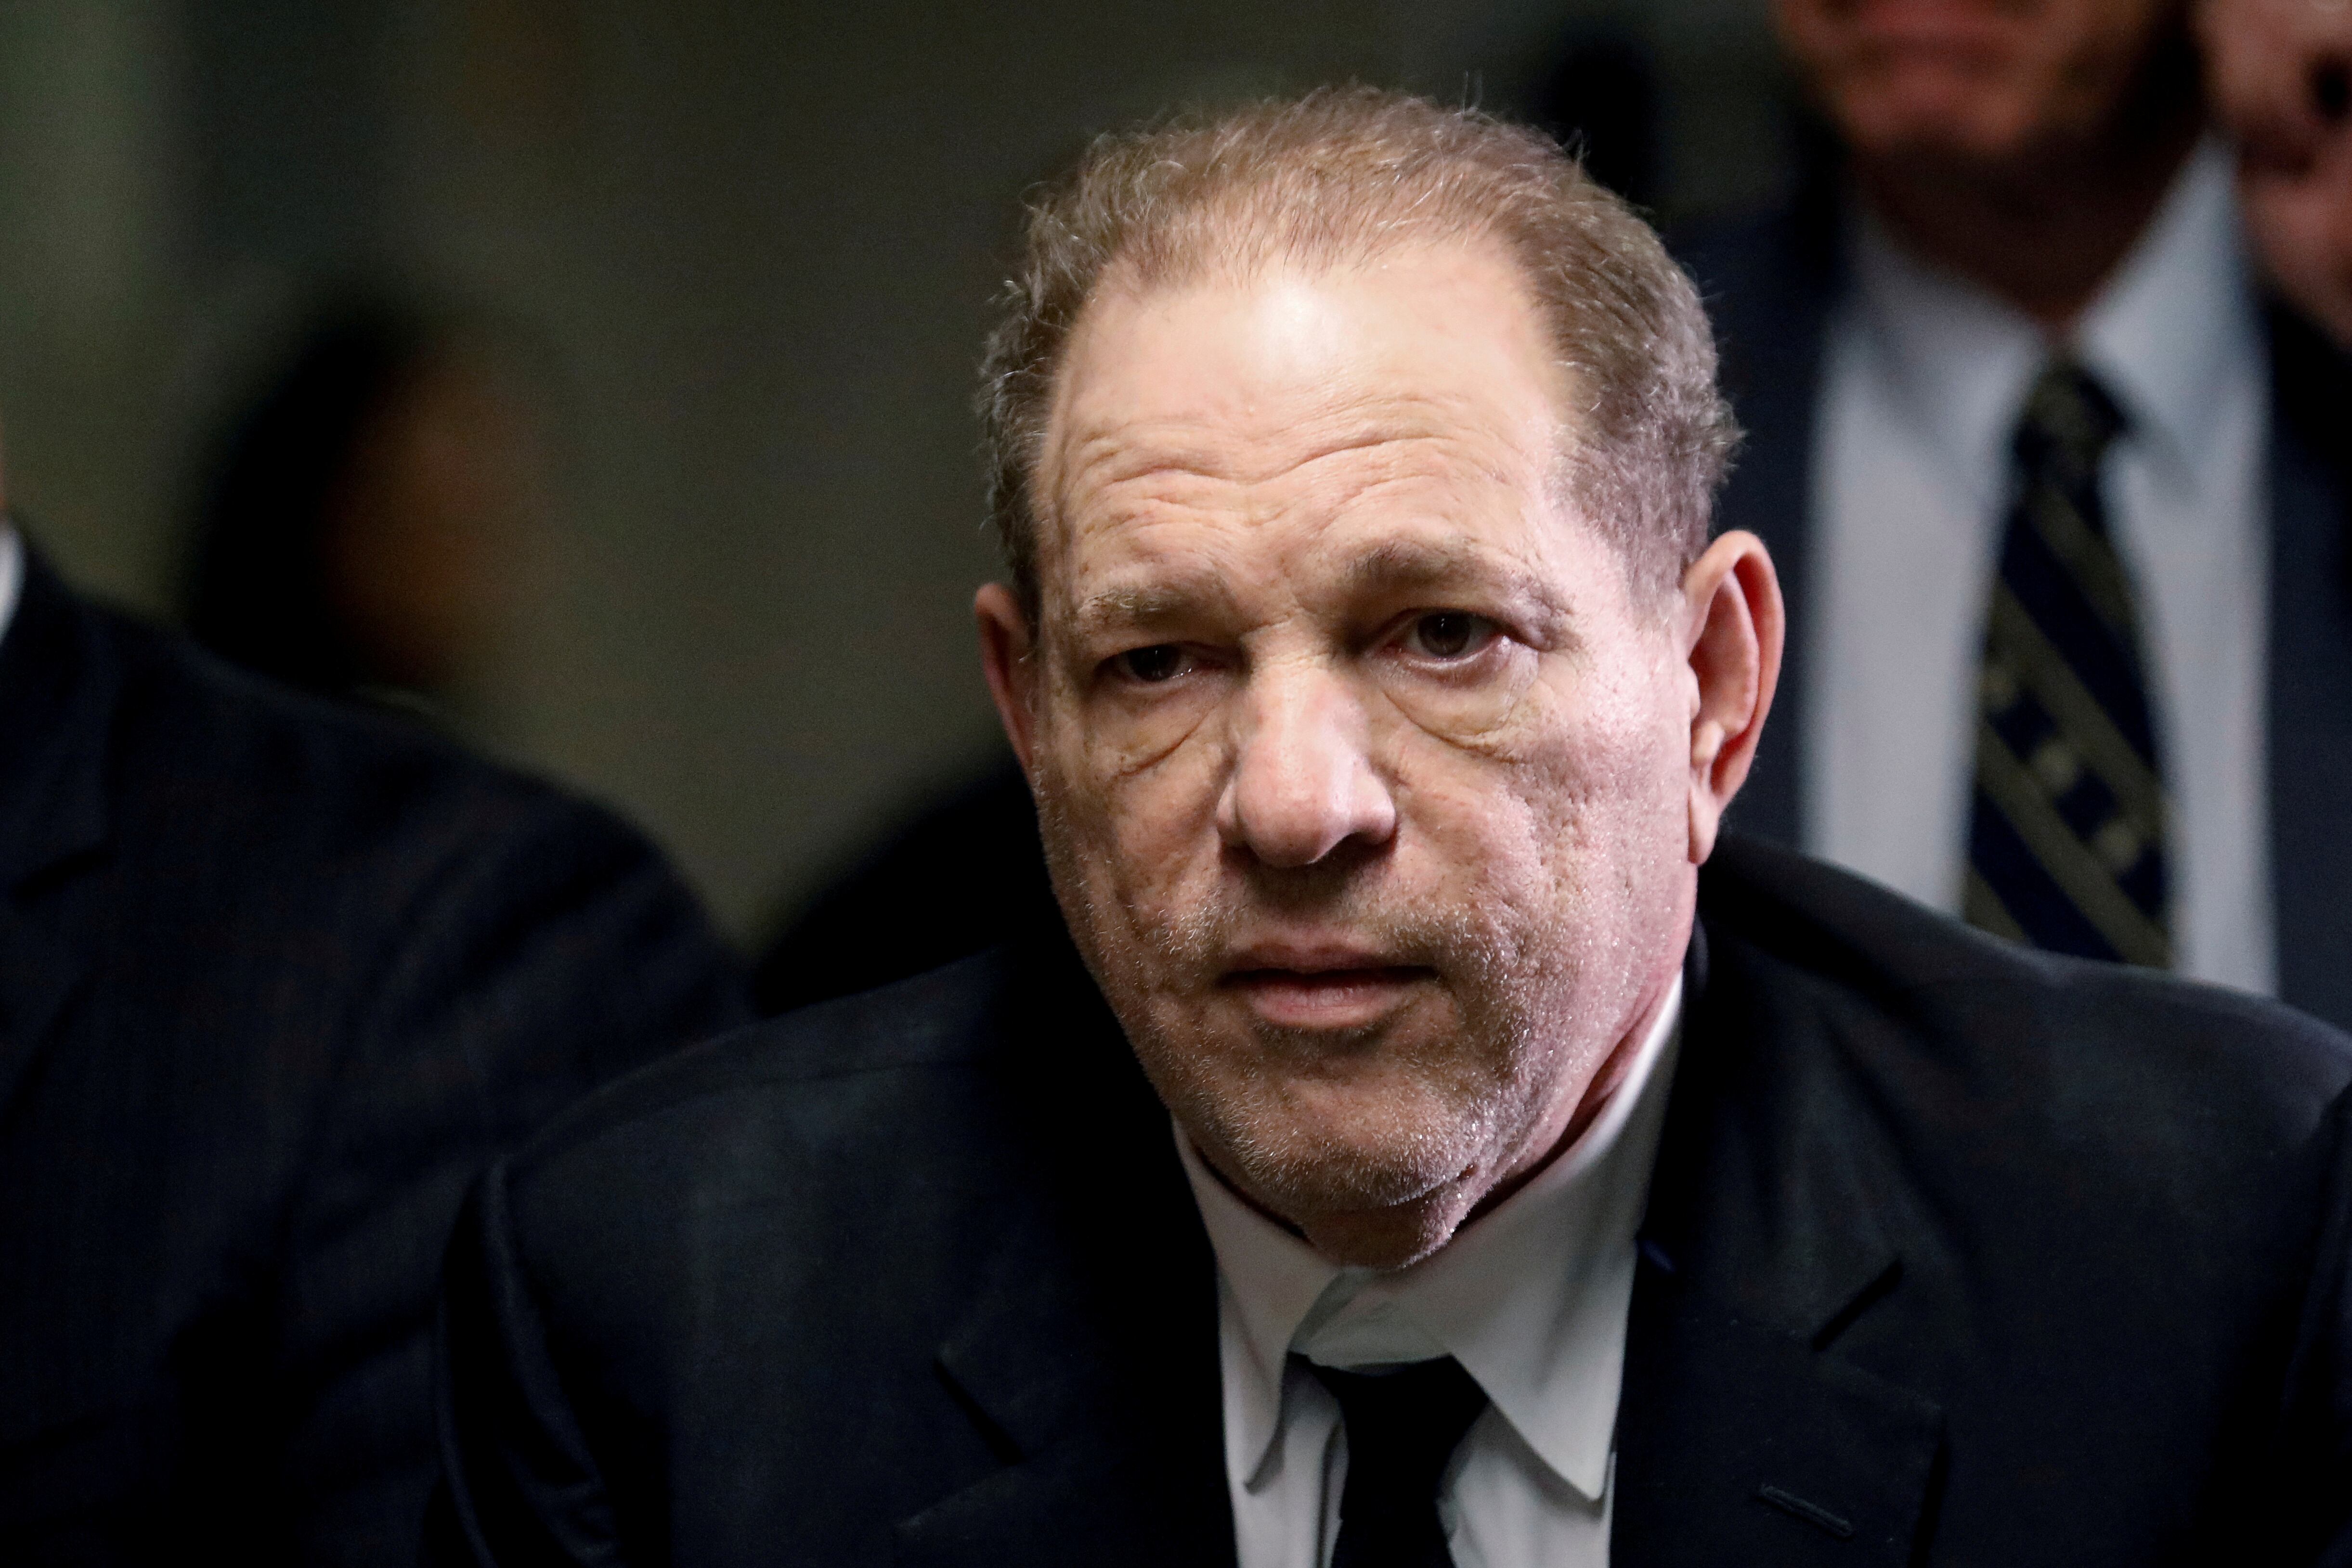 El productor de cine Harvey Weinstein, durante su proceso judicial en enero de 2020.